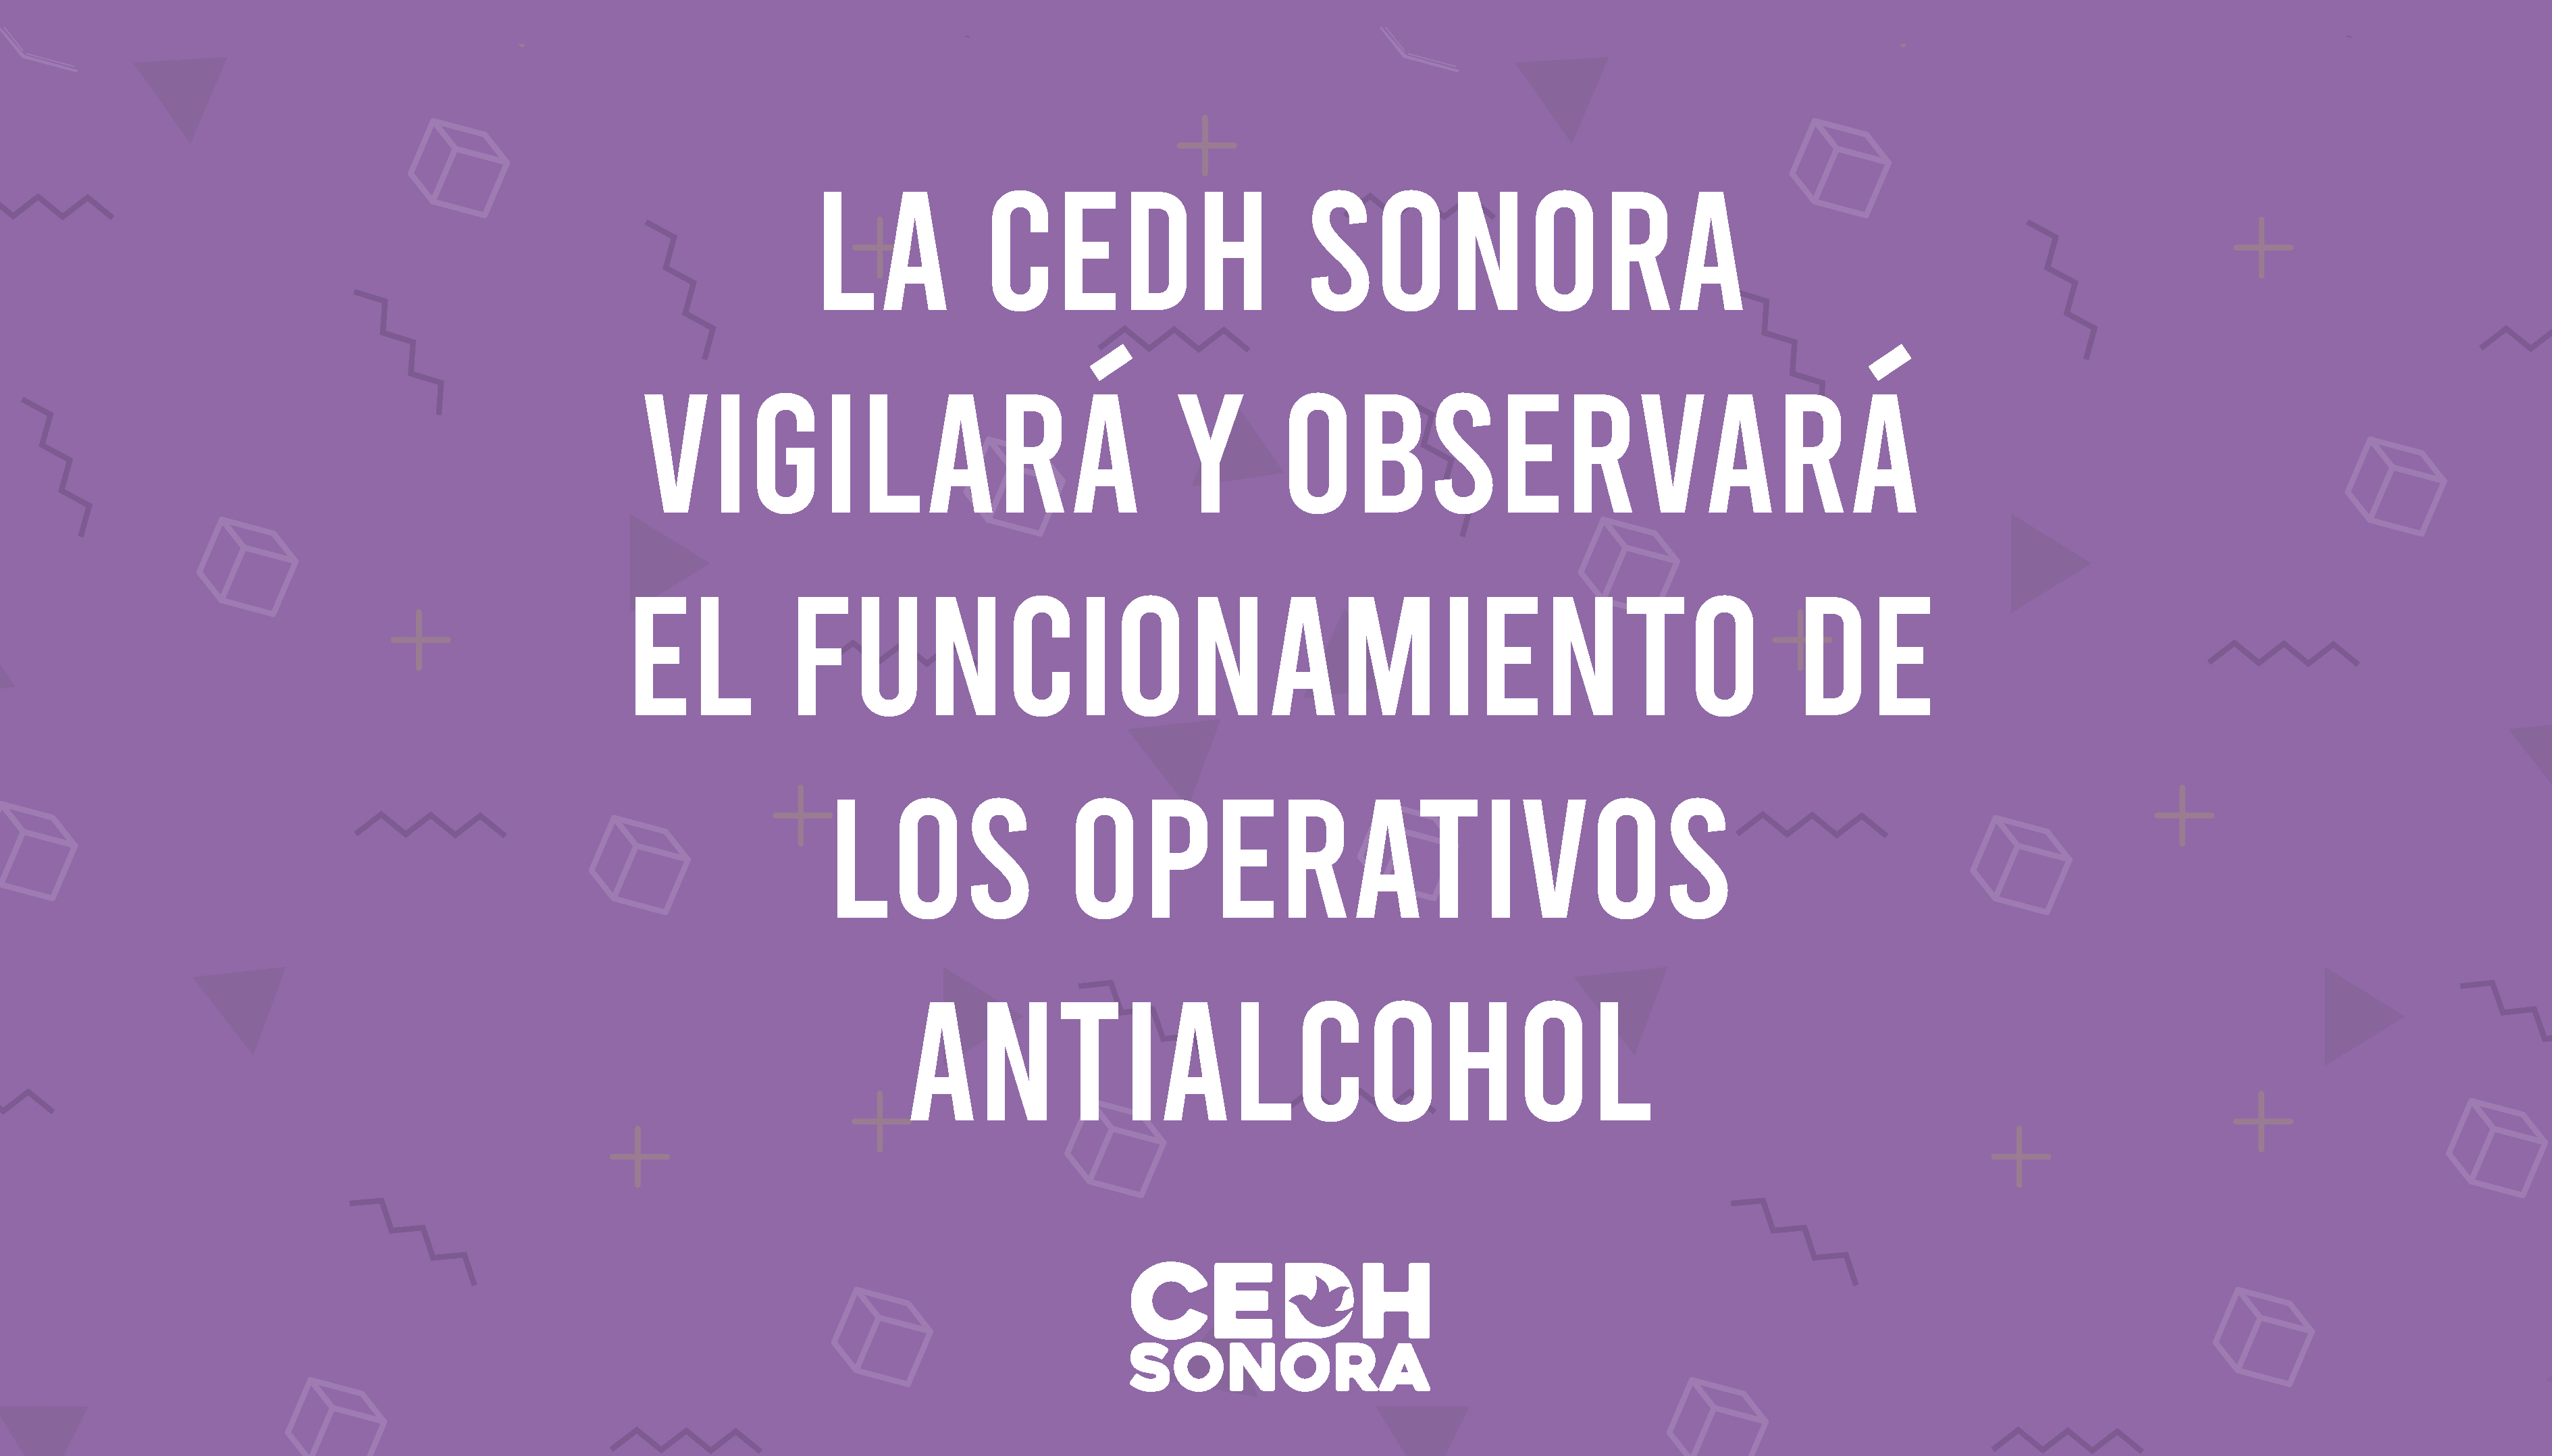 LA CEDH Sonora vigilará y observará el funcionamiento de los operativos antialcohol